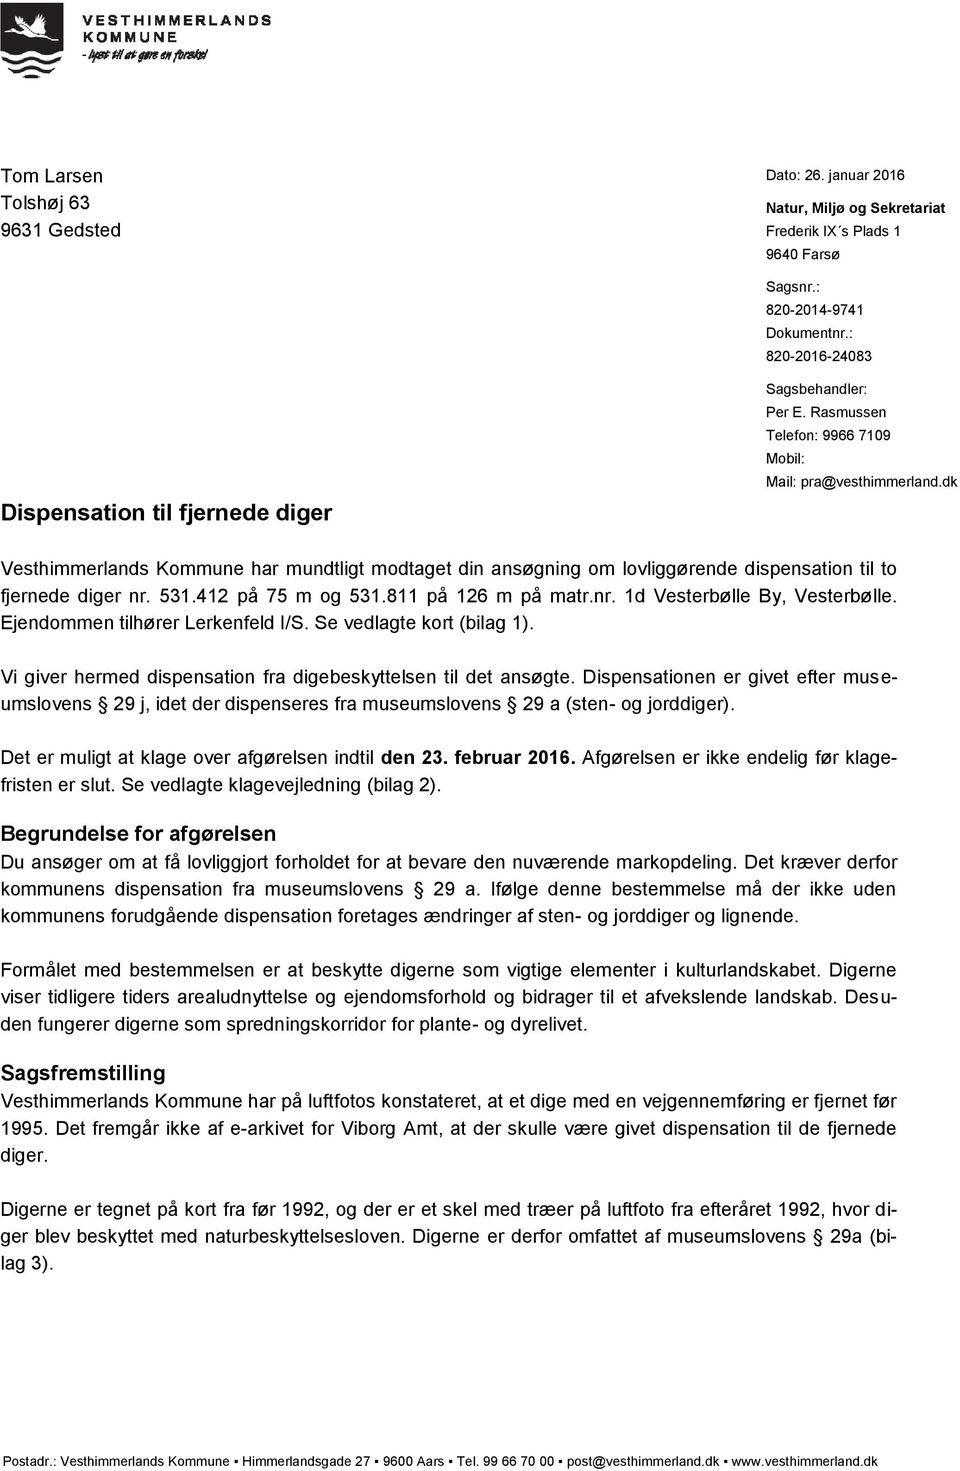 dk Vesthimmerlands Kommune har mundtligt modtaget din ansøgning om lovliggørende dispensation til to fjernede diger nr. 531.412 på 75 m og 531.811 på 126 m på matr.nr. 1d Vesterbølle By, Vesterbølle.